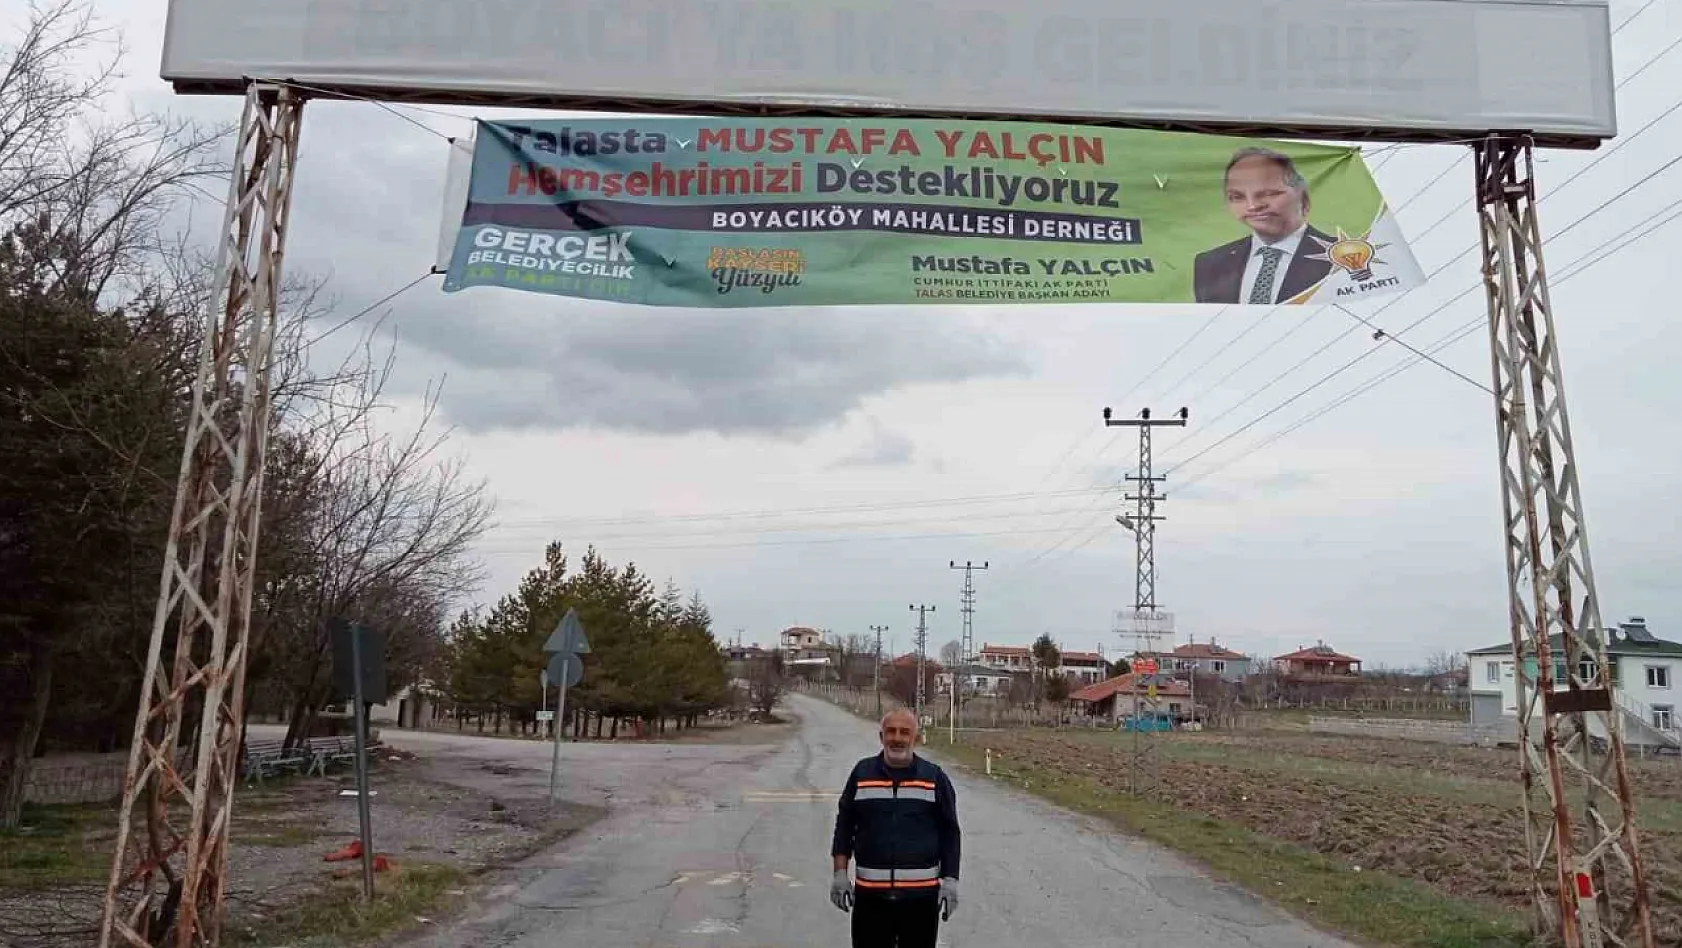 Boyacı'dan Mustafa Yalçın'a destek